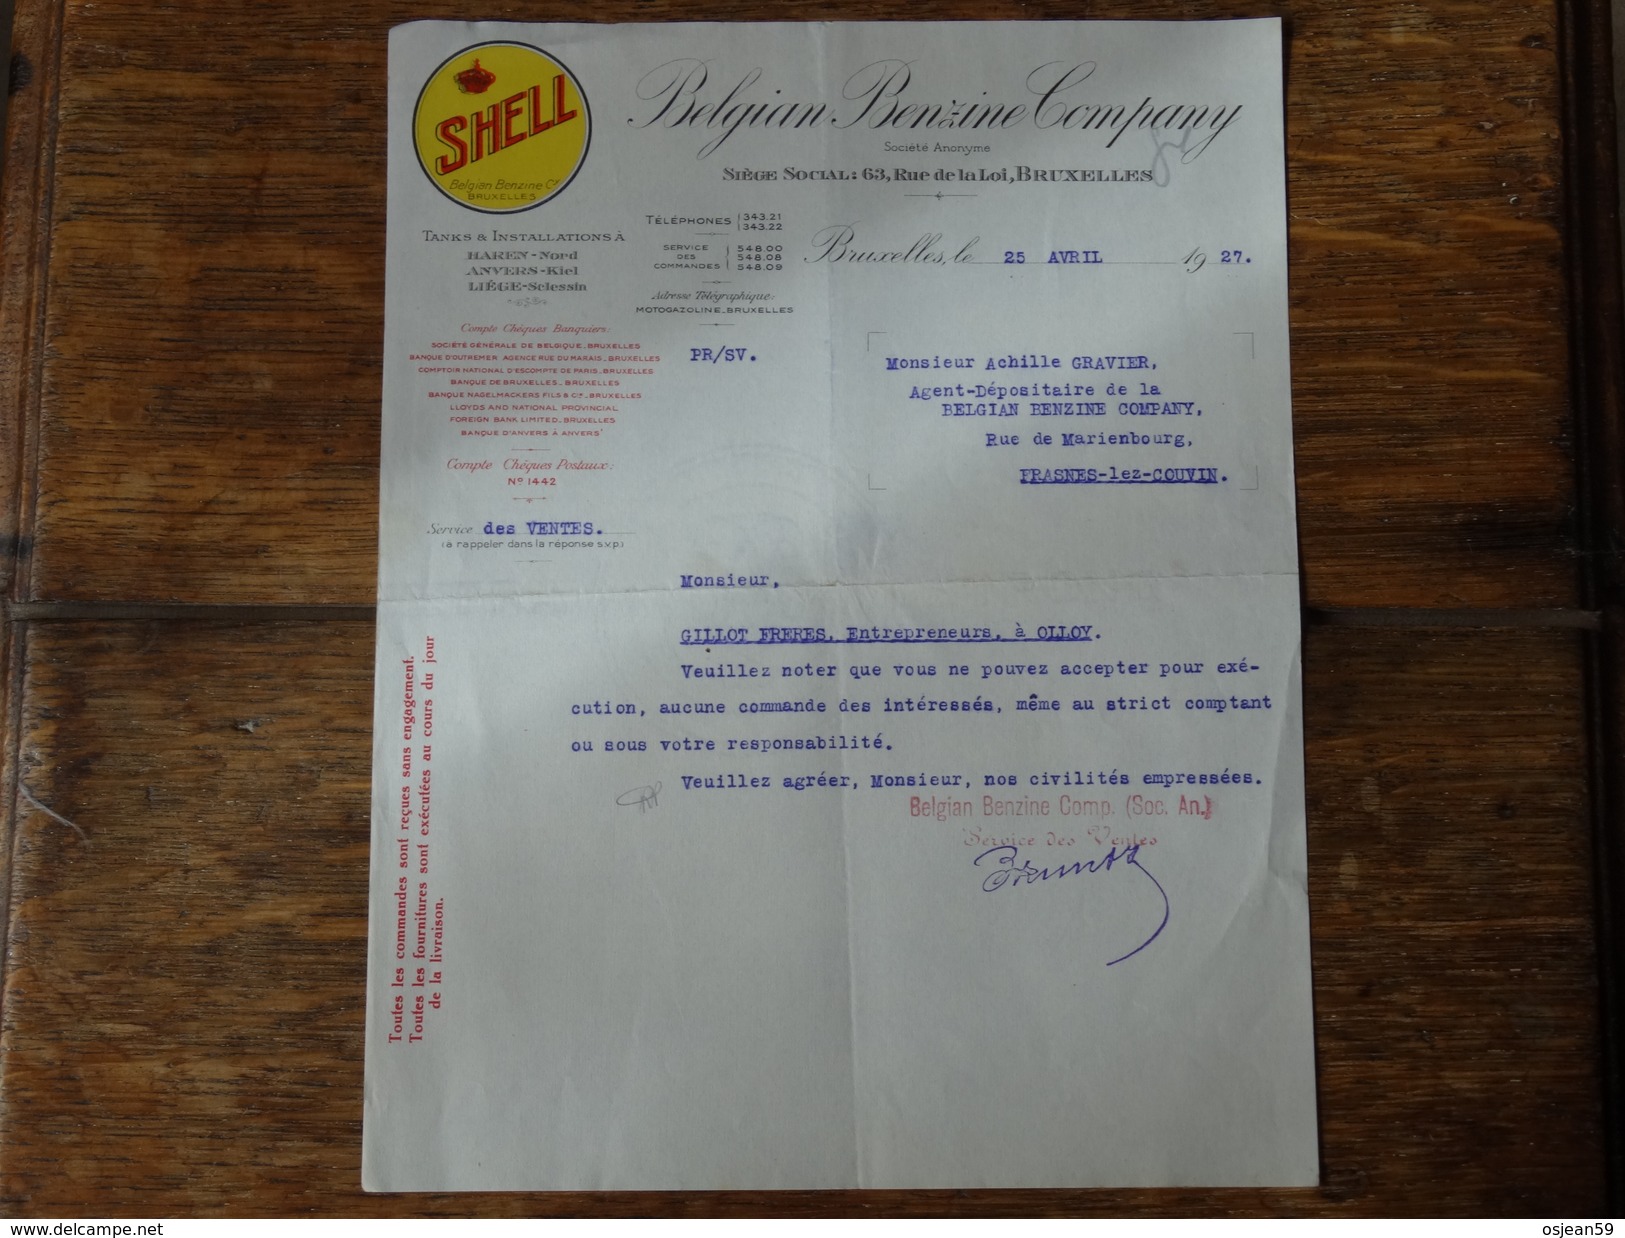 SHELL-Belgian Benzine Company - Courier Du 25 Avril 1927. - Automobilismo